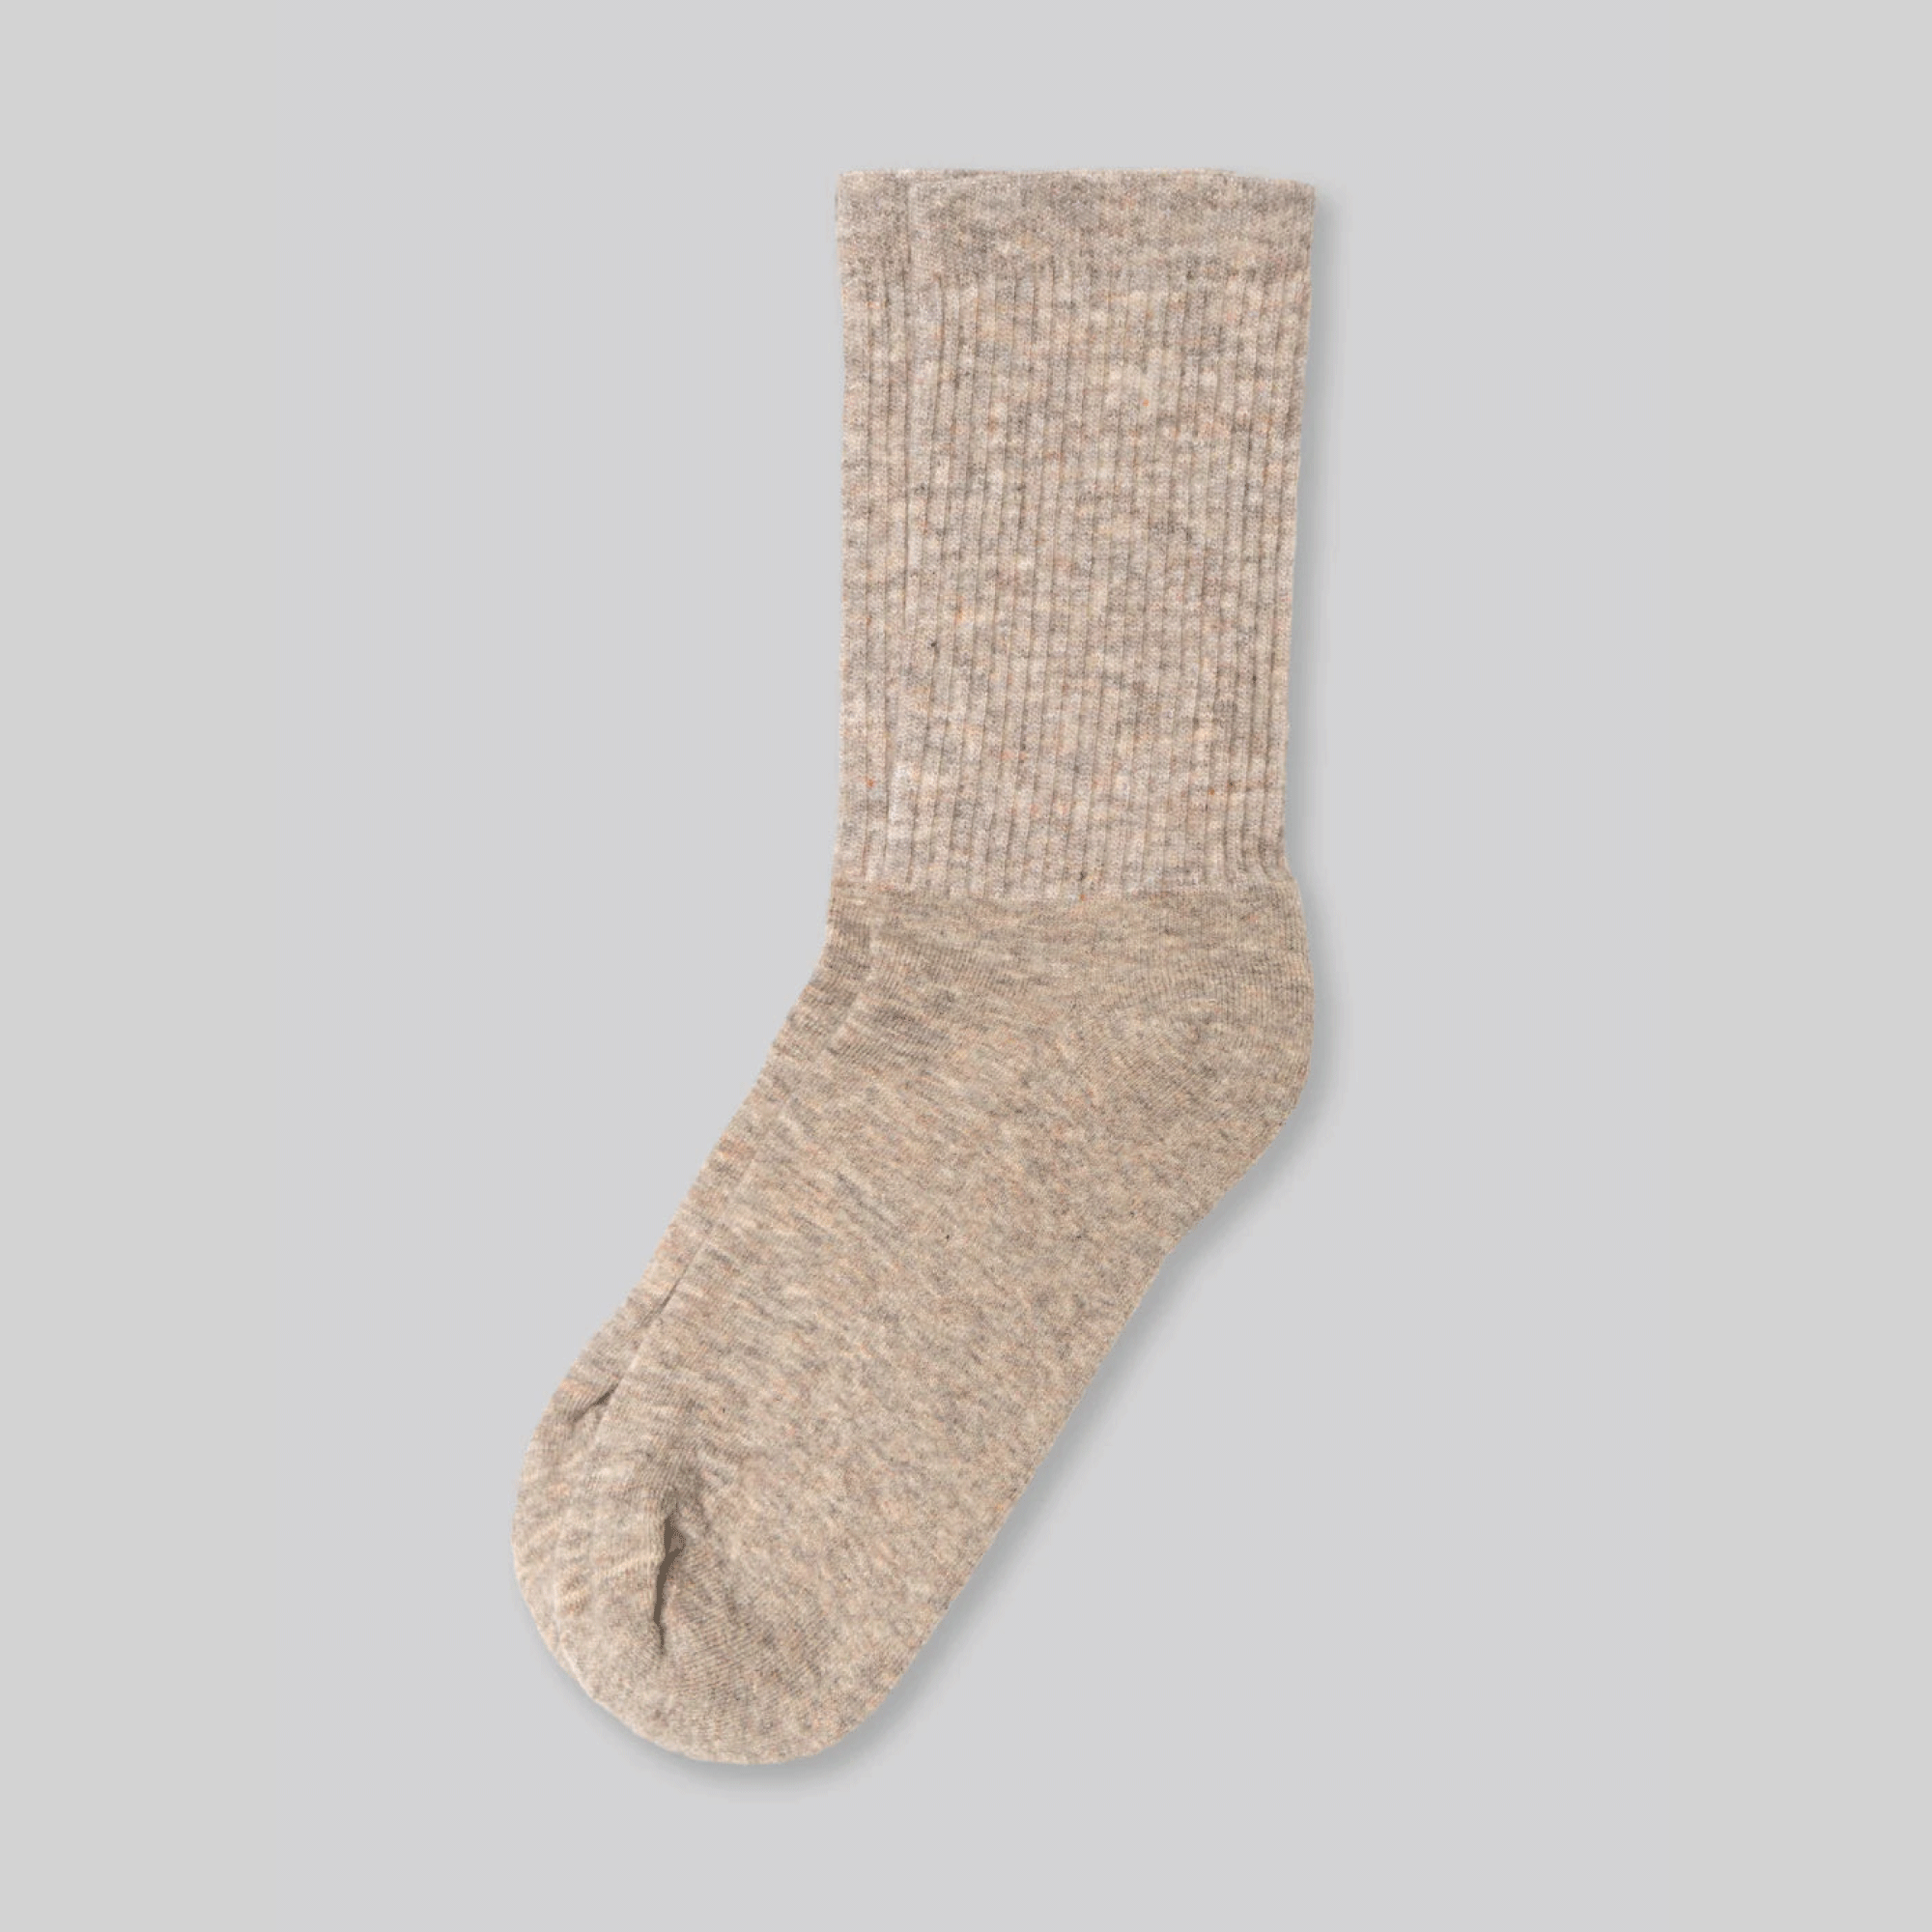 Superfine Merino Wool Socks - Taupe Heather